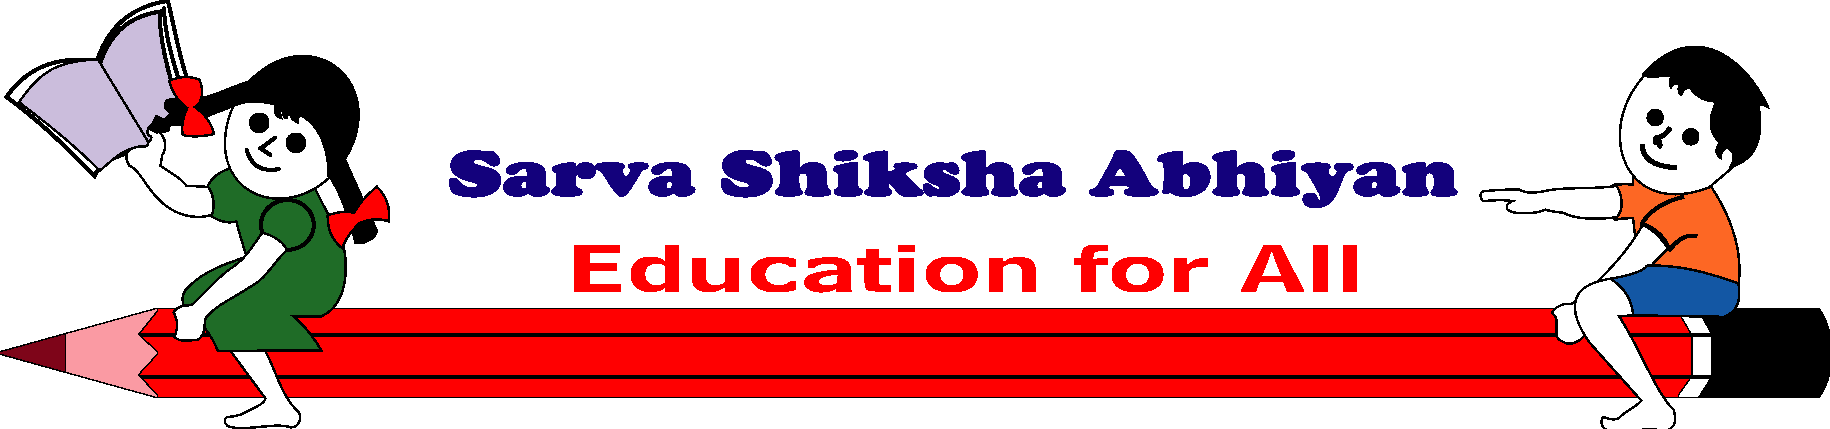 Sarva shiksha Abhiyan|सर्व शिक्षा अभियान| Aim of SSA| Aim of Sarva Shiksha  abhiyan|CTET|B.Ed|MPTET - YouTube